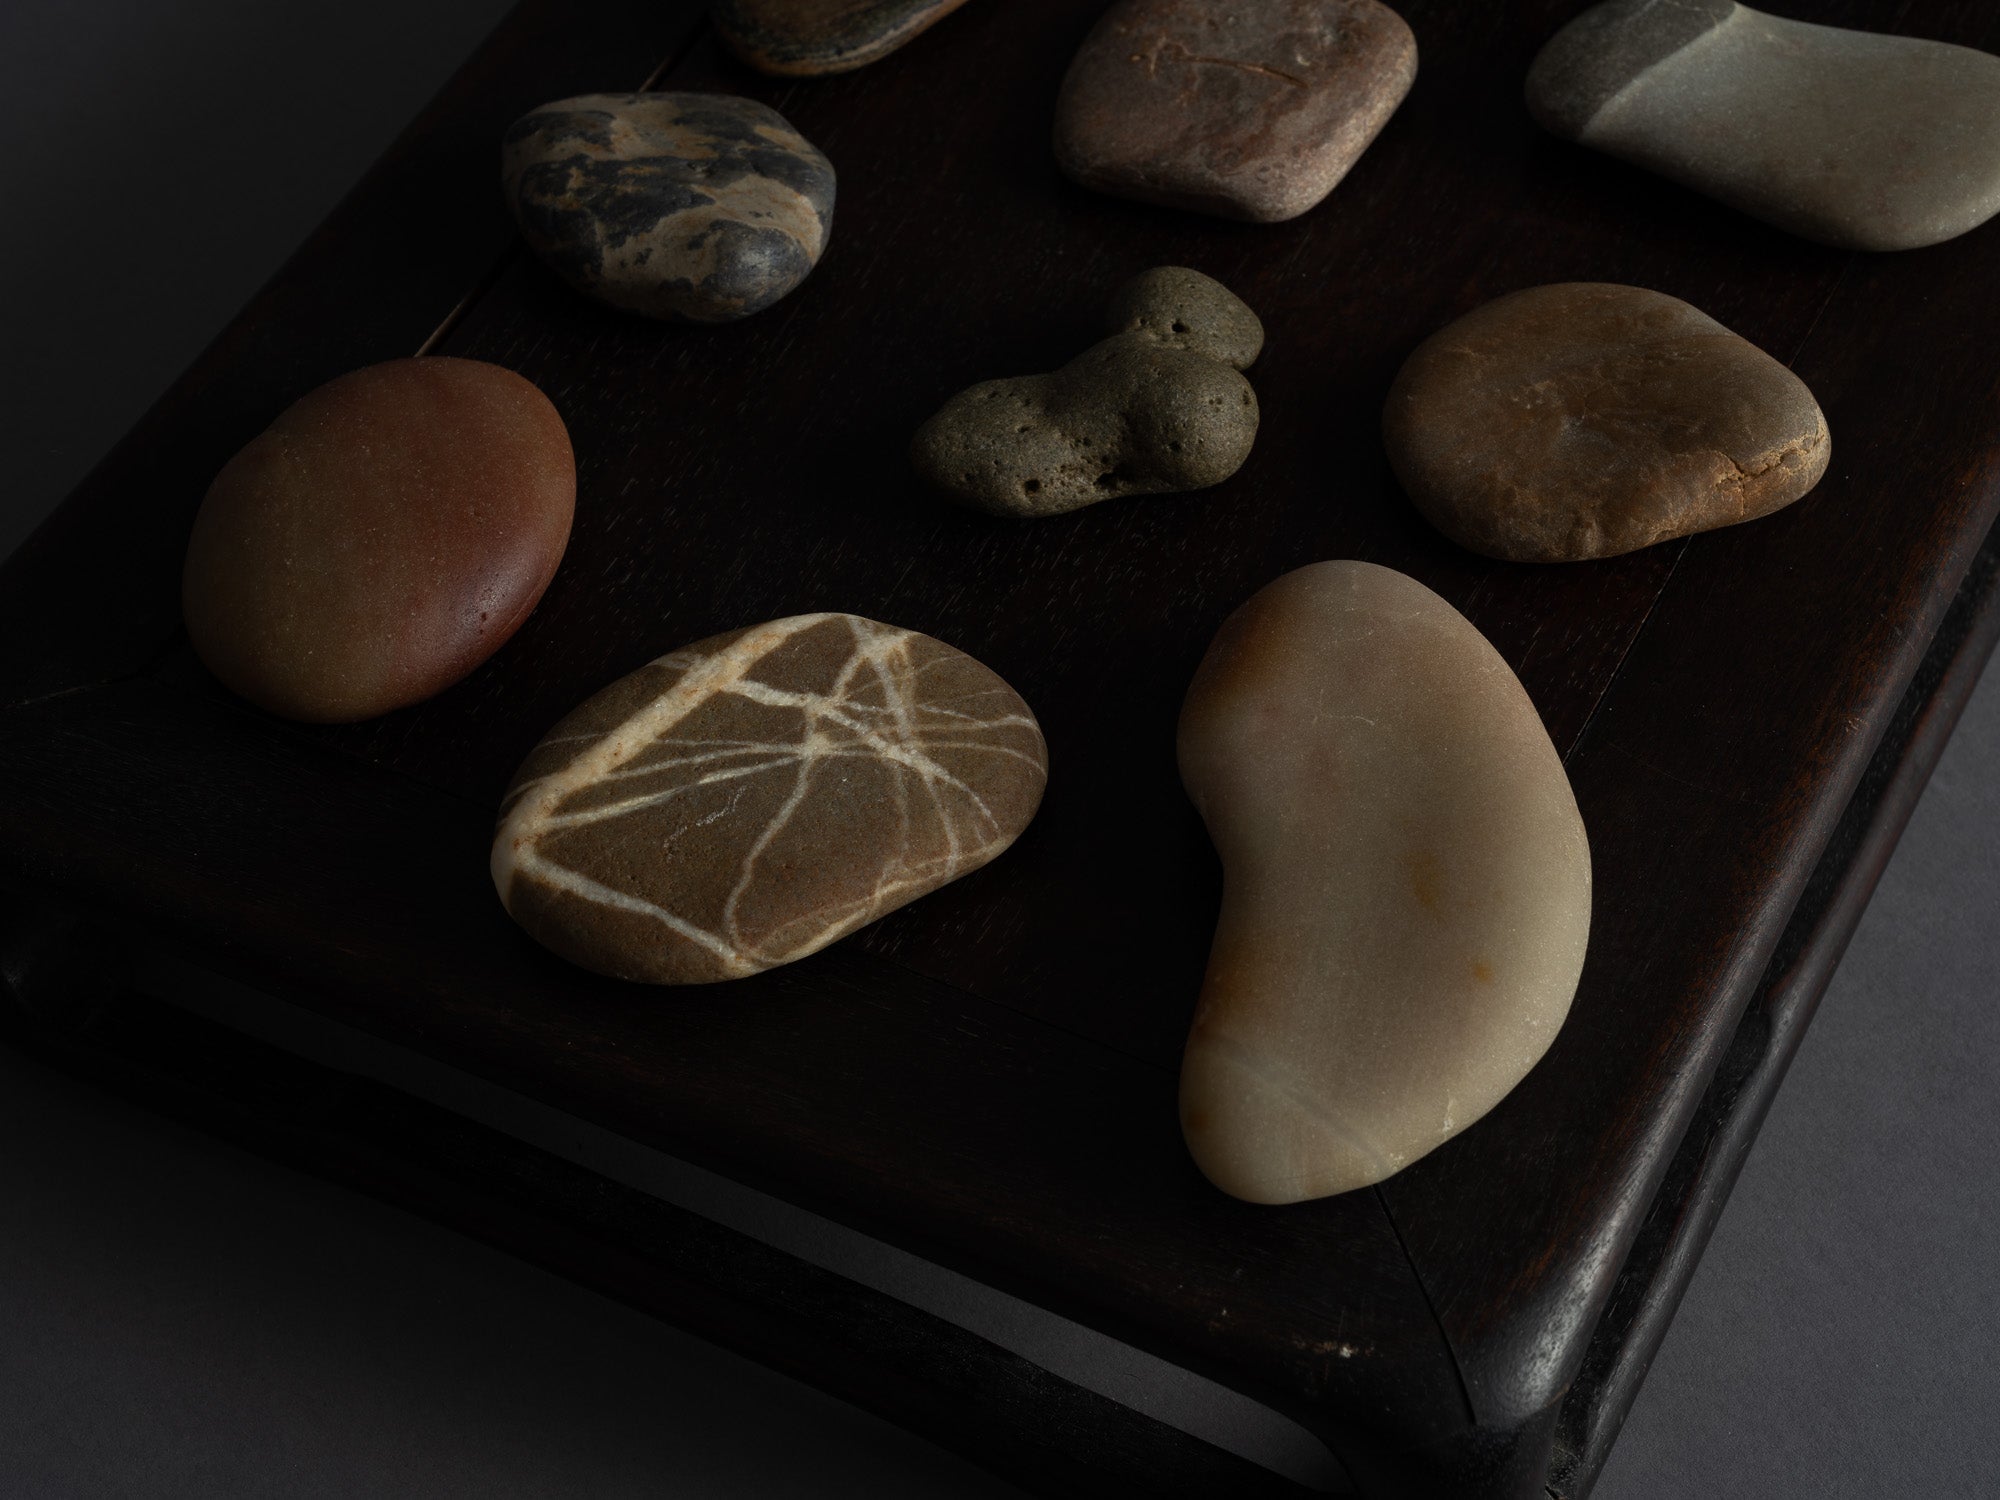 Mitate, collection de pierres et leur support, France..Mitate, Stones collection, France